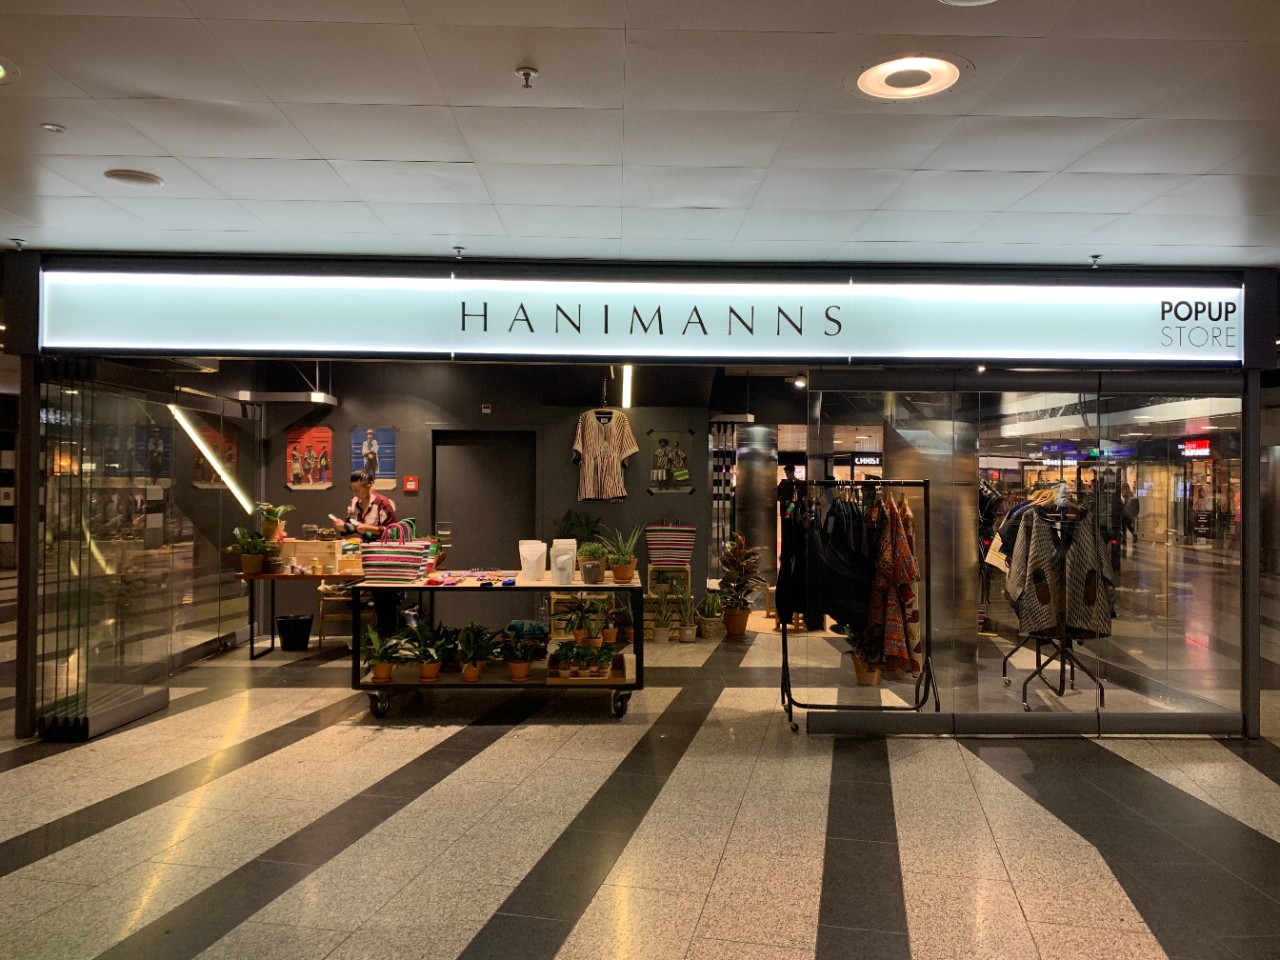 Im gläsernen Pop-Up Store von «Hannimanns» sind bunte Kleider und Accessoires westafrikanischer Designer ausgestellt.